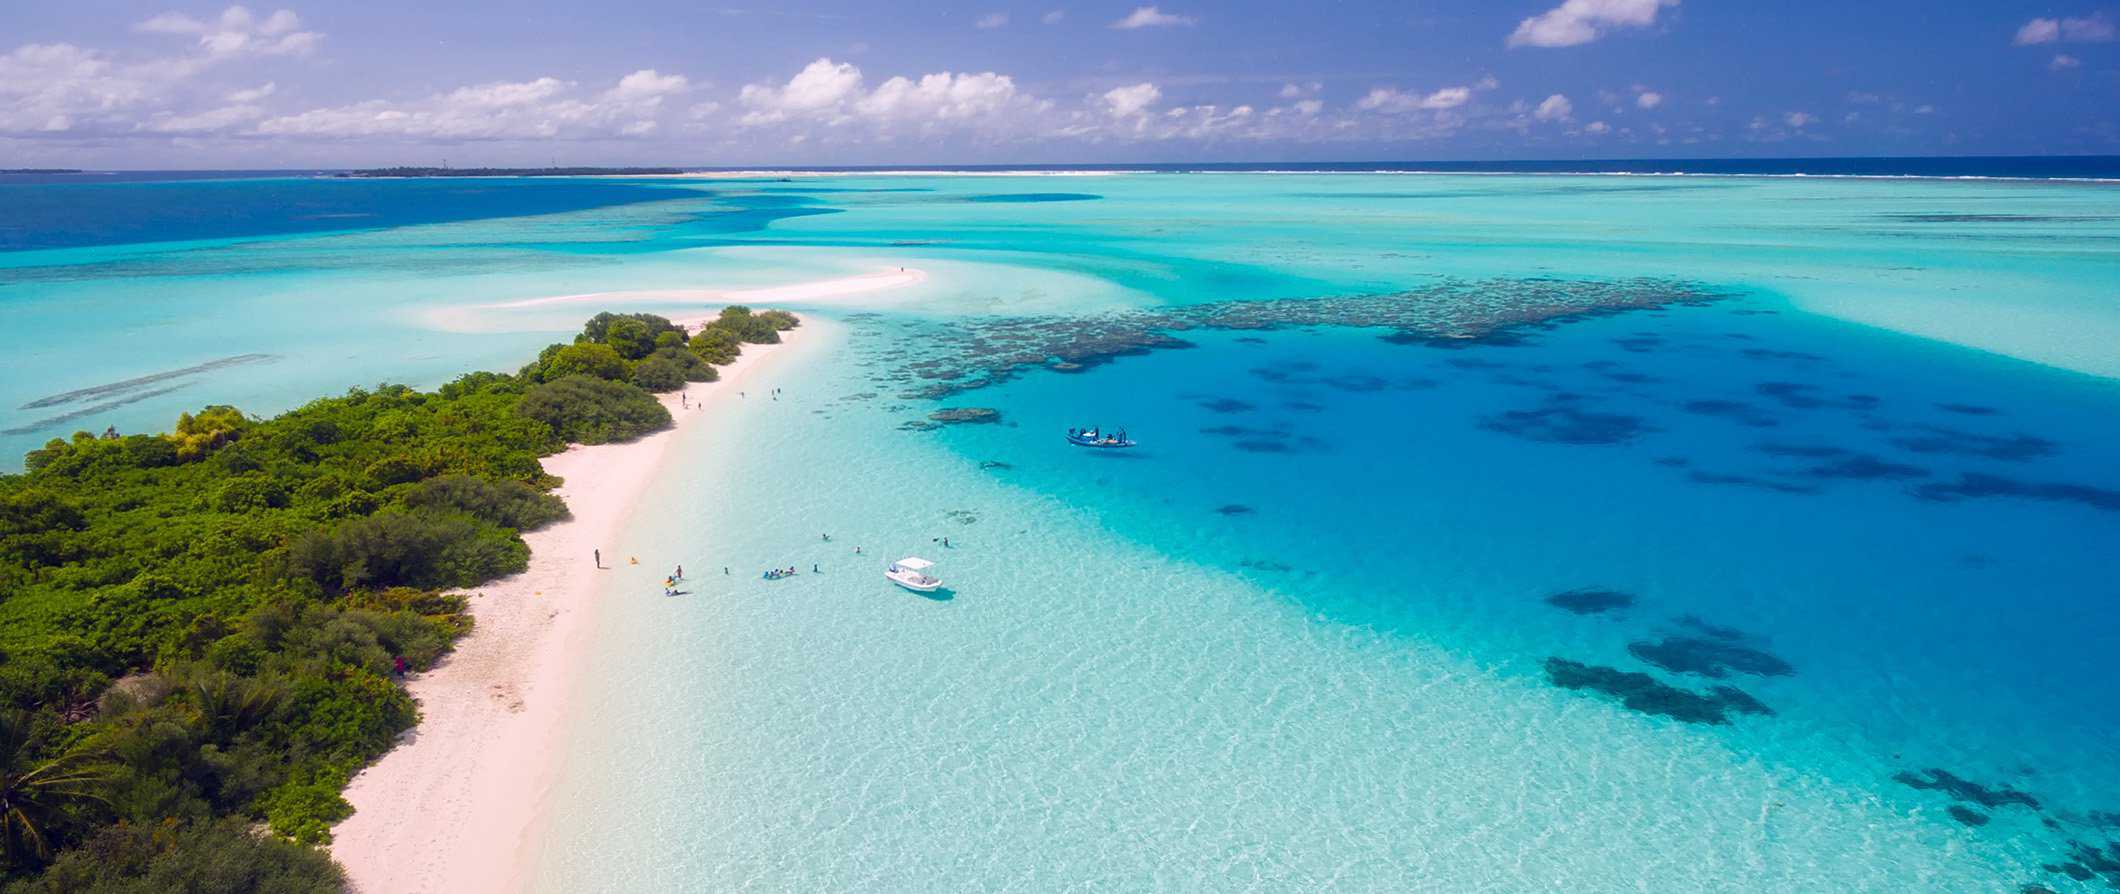 The Maldives, Top 10 snorkeling spots, best snorkeling in the world, best snorkeling locations, beach travel, beach travel destinations, best snorkeling, snorkeling gear guide